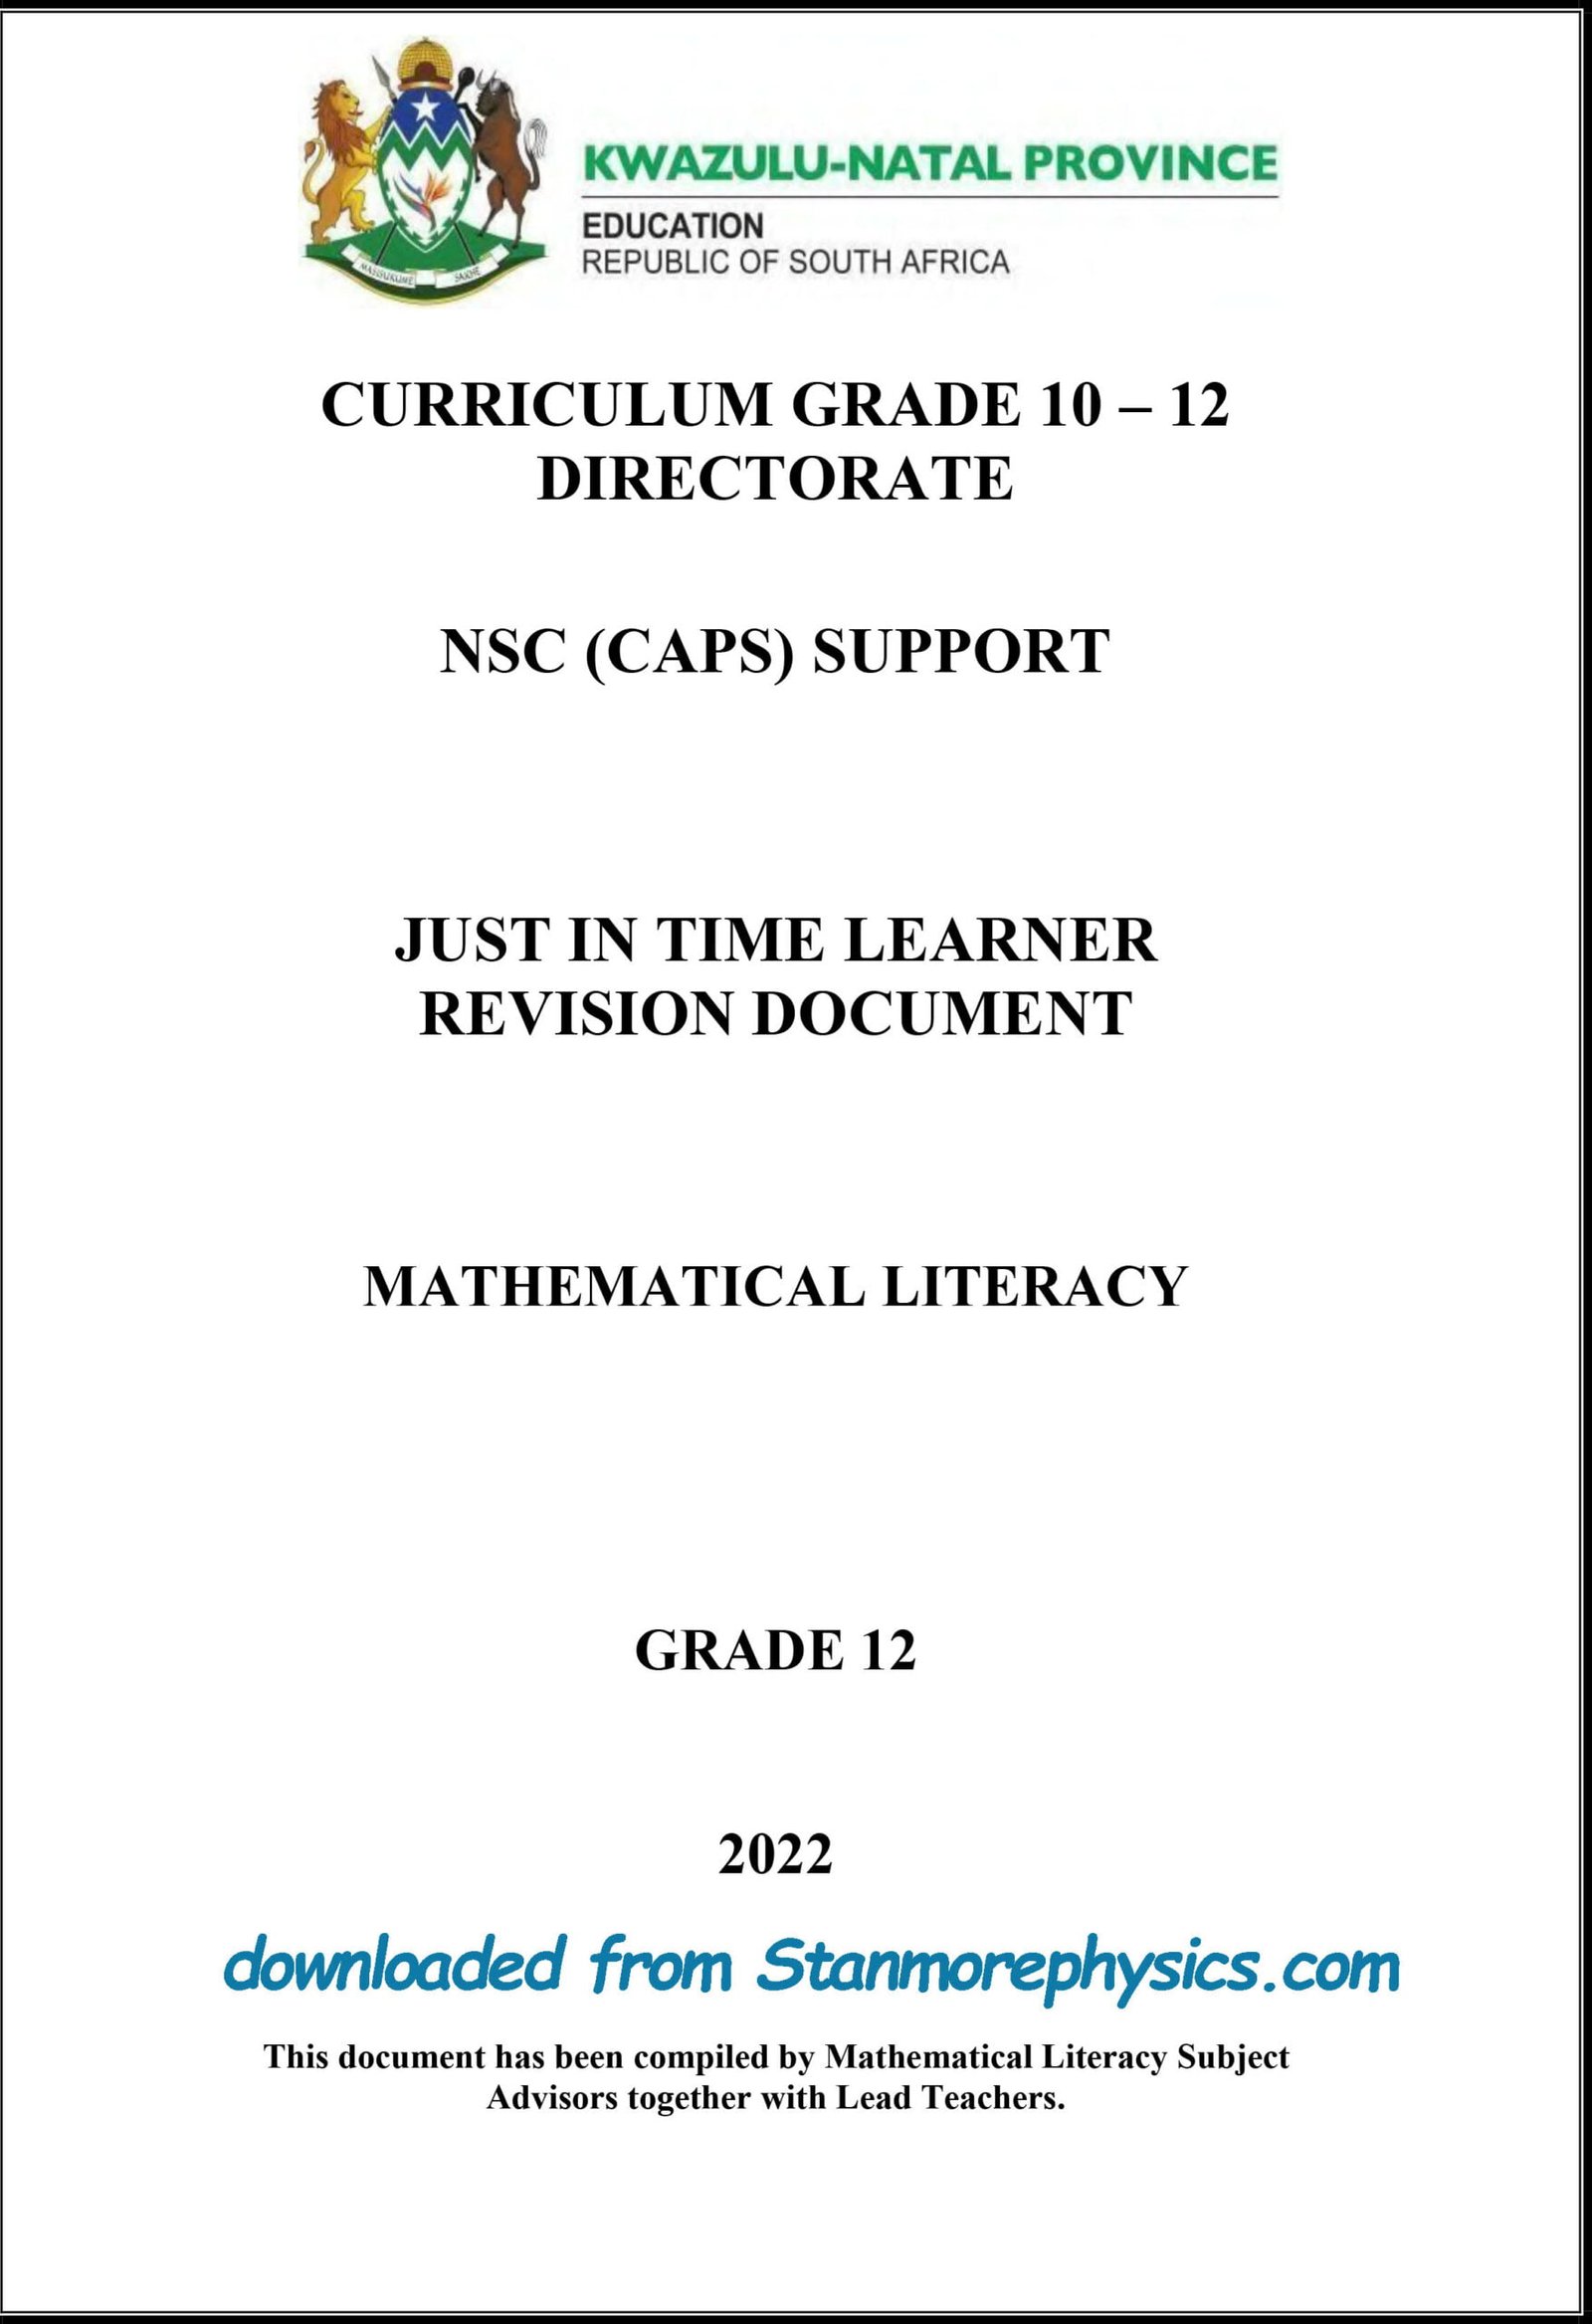 mathematical literacy assignment term 3 grade 12